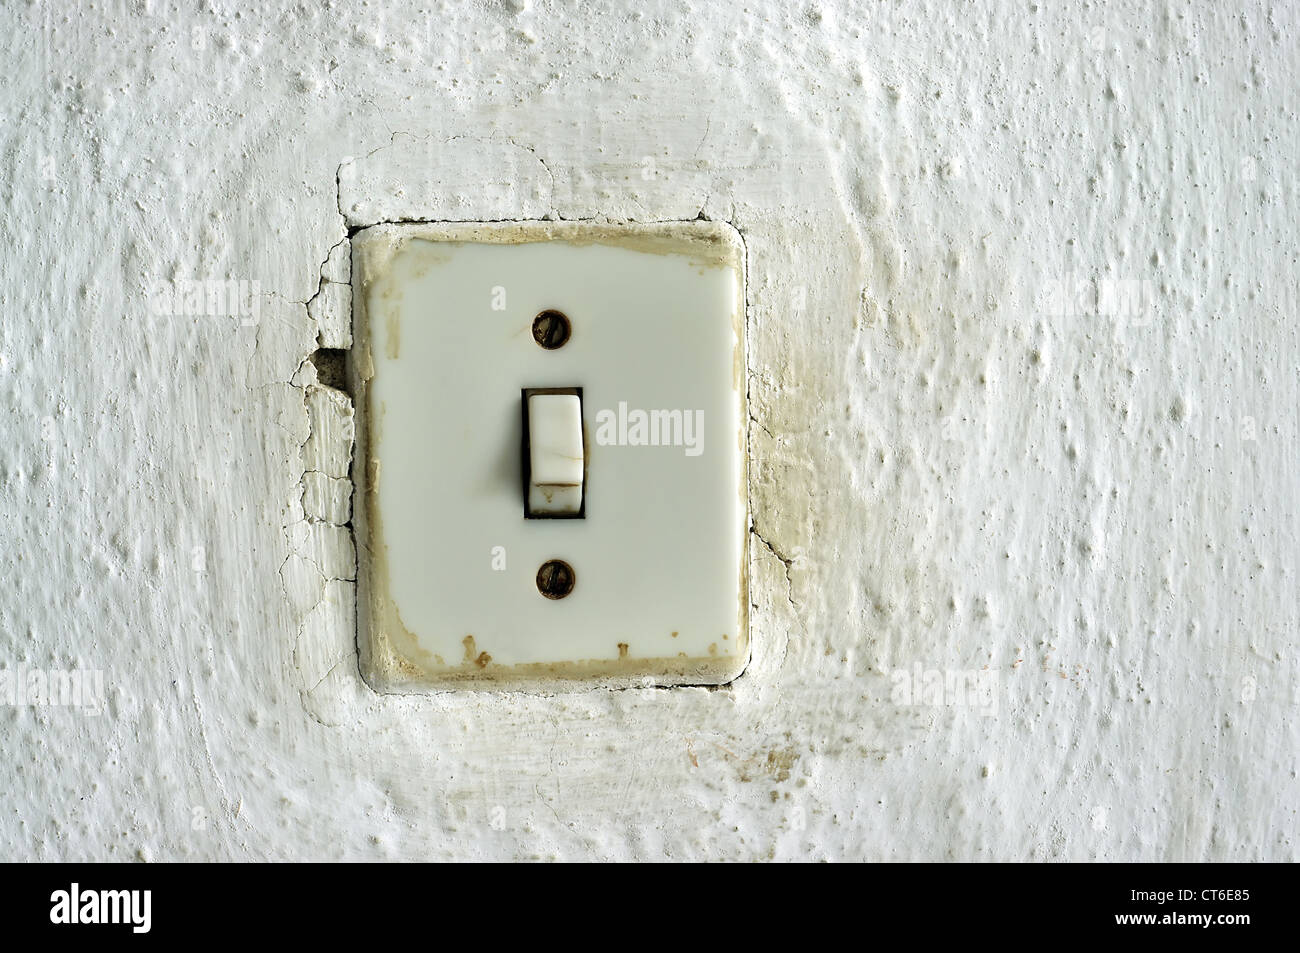 Interruptores De Luz Modernos En Una Pared Imagen de archivo - Imagen de  pintura, fuente: 198610027